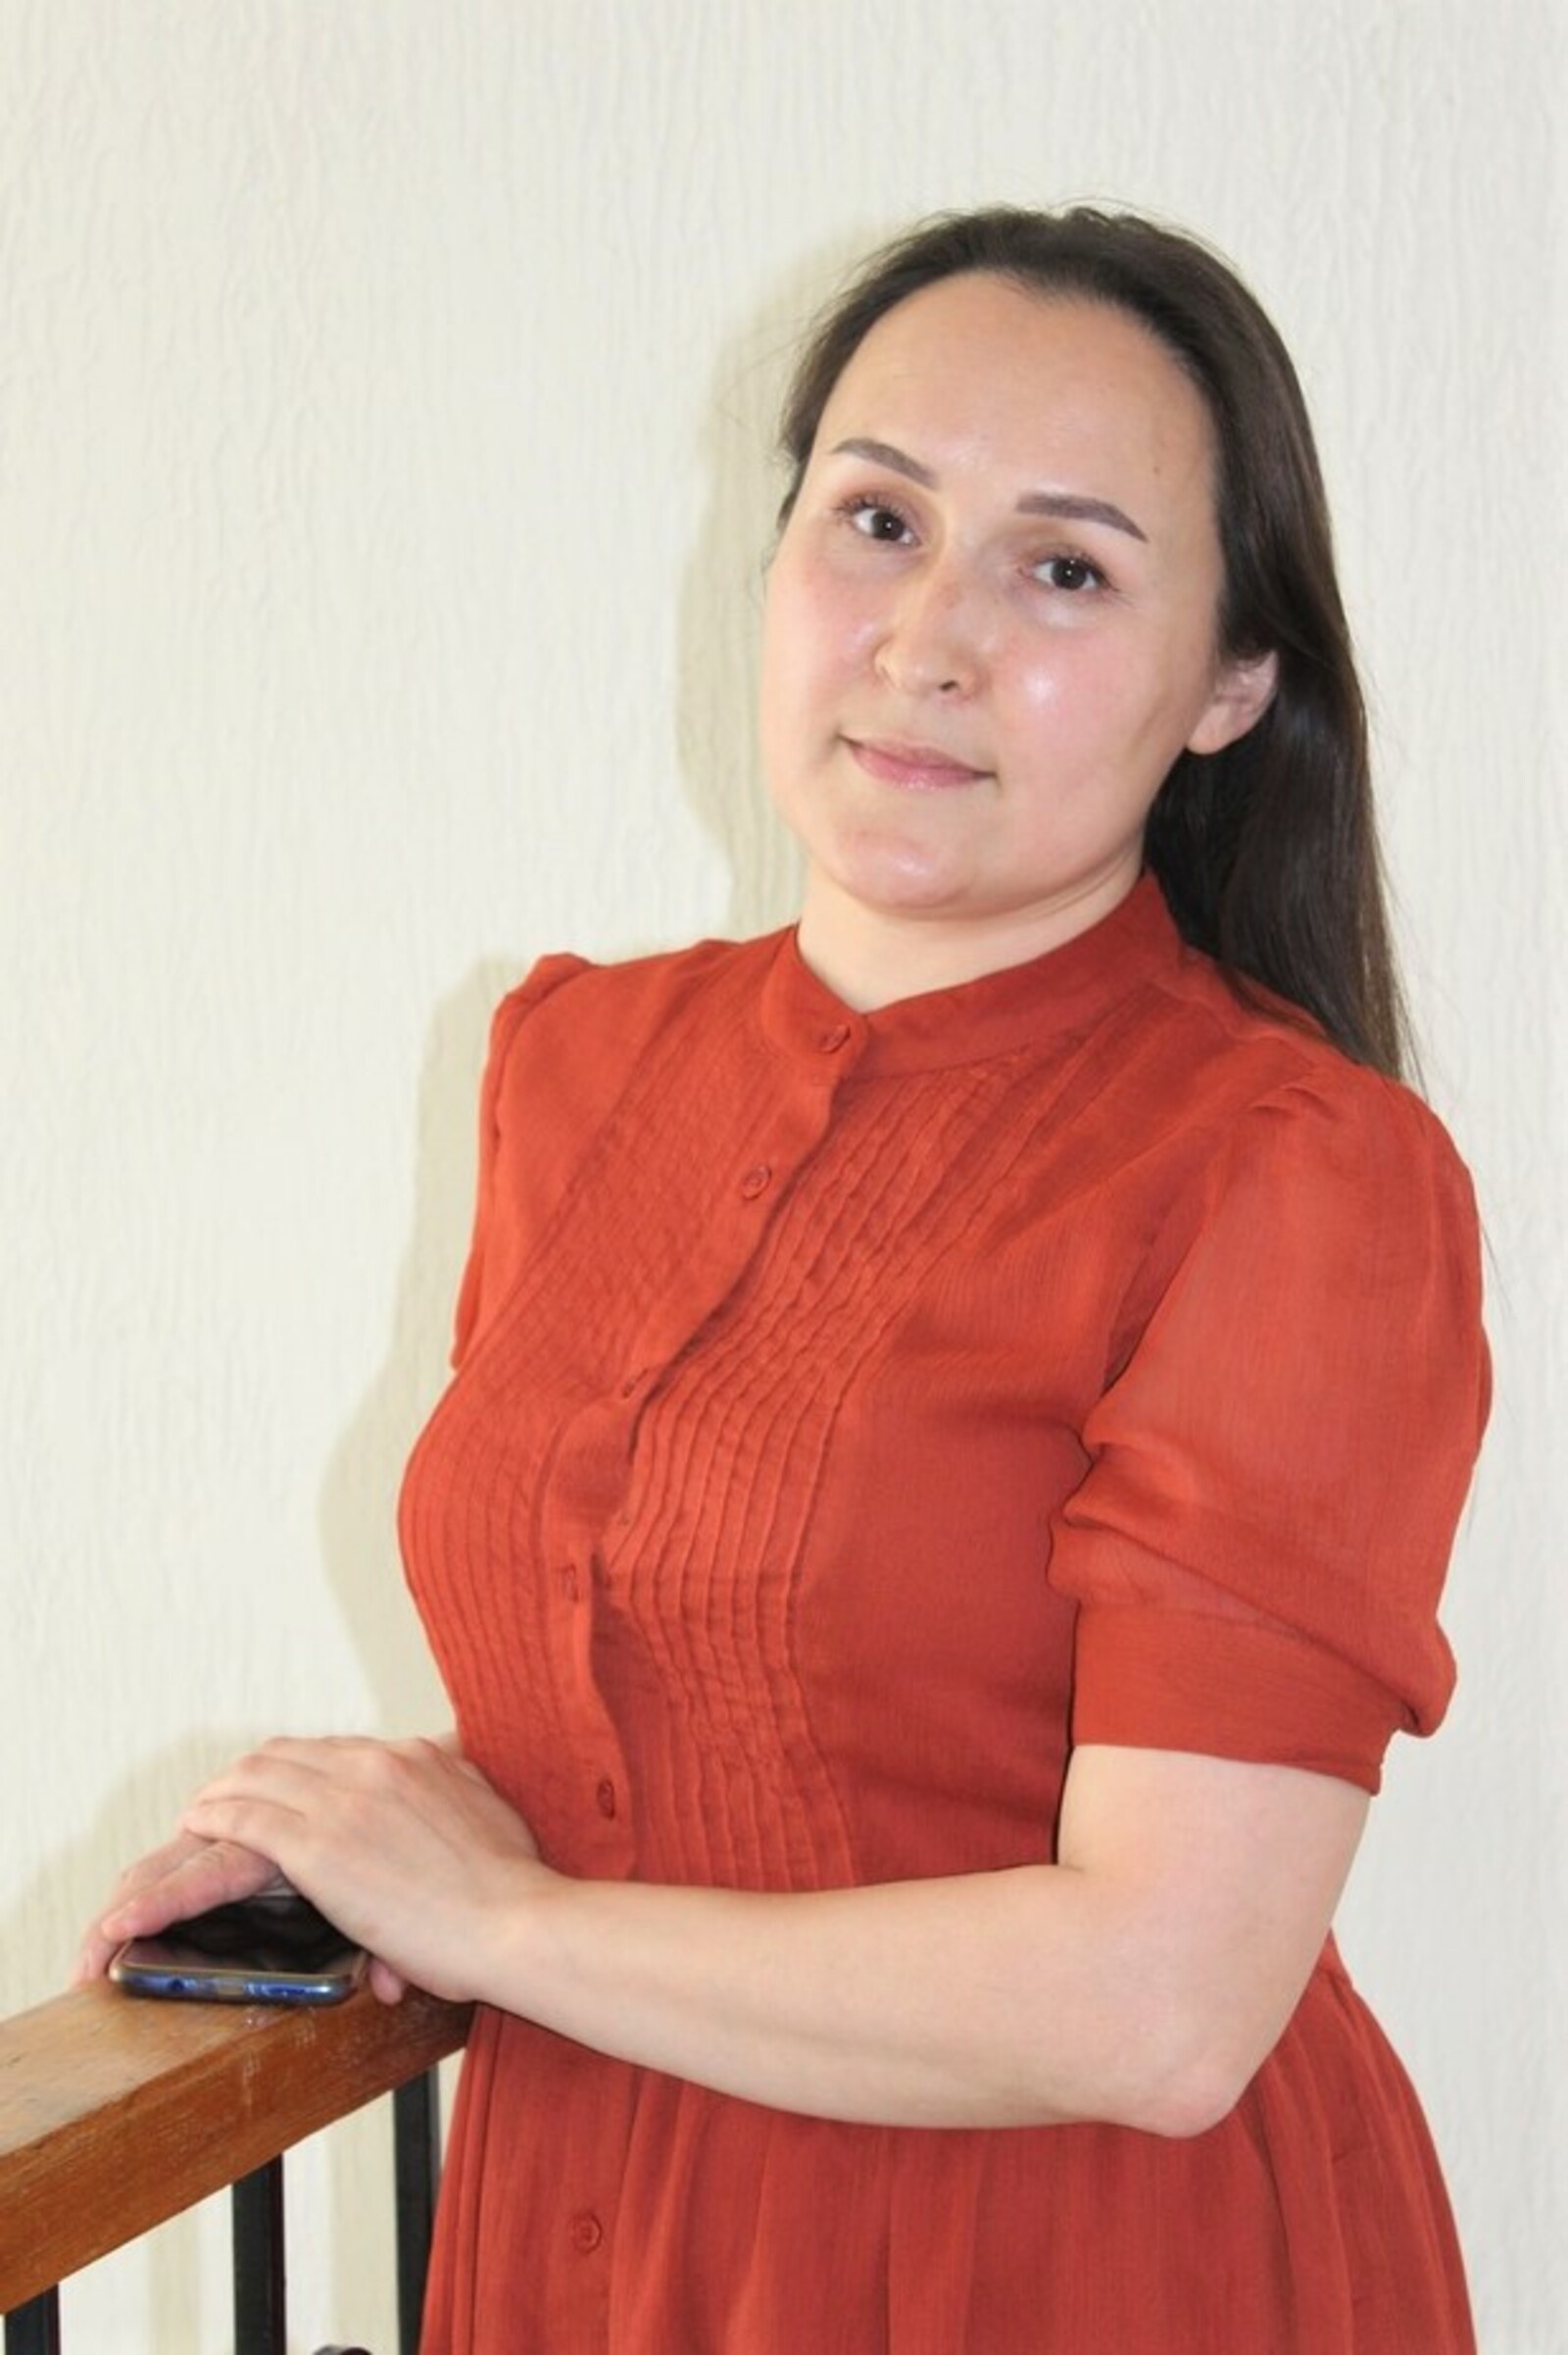 В Башкирии прошел закрытый показ фильма "Пара слов" выпускницы кинопроекта «Слово Земли/Онлайн 2.0»